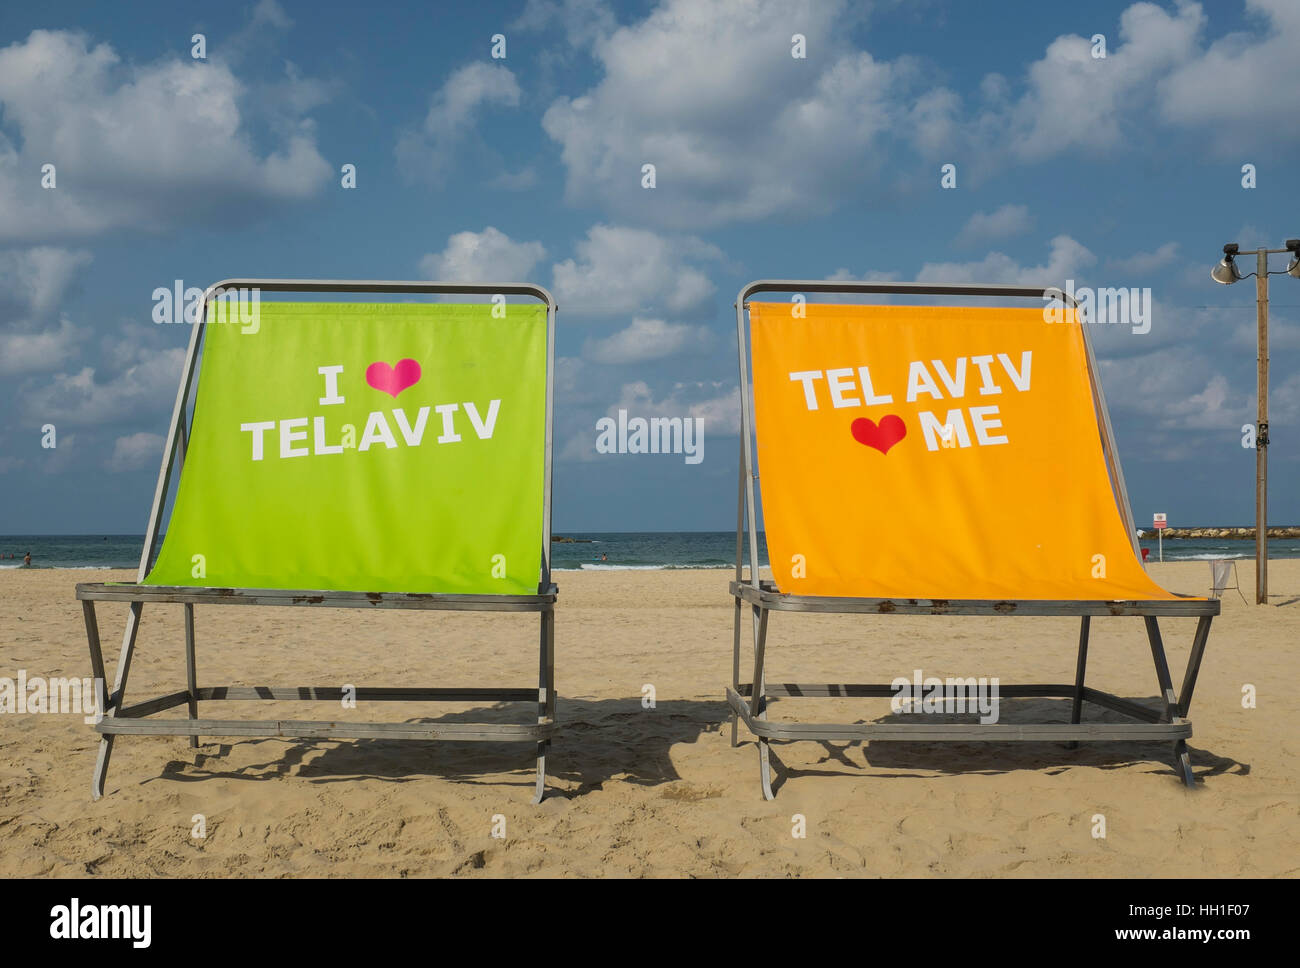 Io amo Tel Aviv, Tel Aviv mi ama, Tel Aviv beach front, Israele Foto Stock